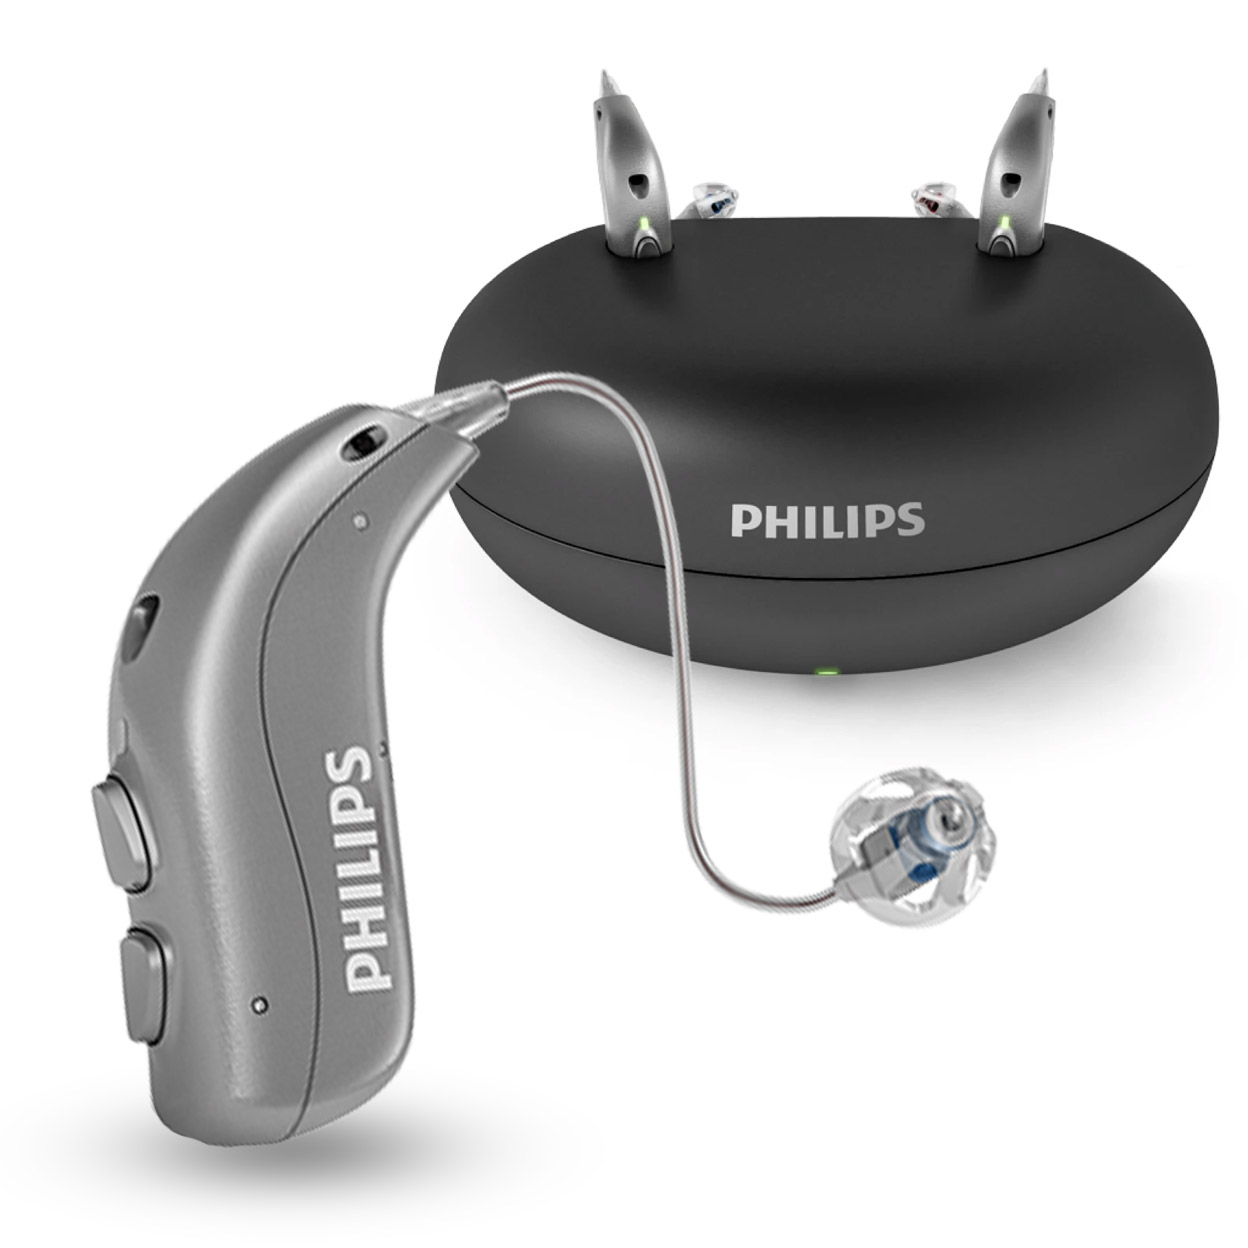 Philips HearLink miniRITE T R 9030 von Philips Preis Erfahrungen Zubehör